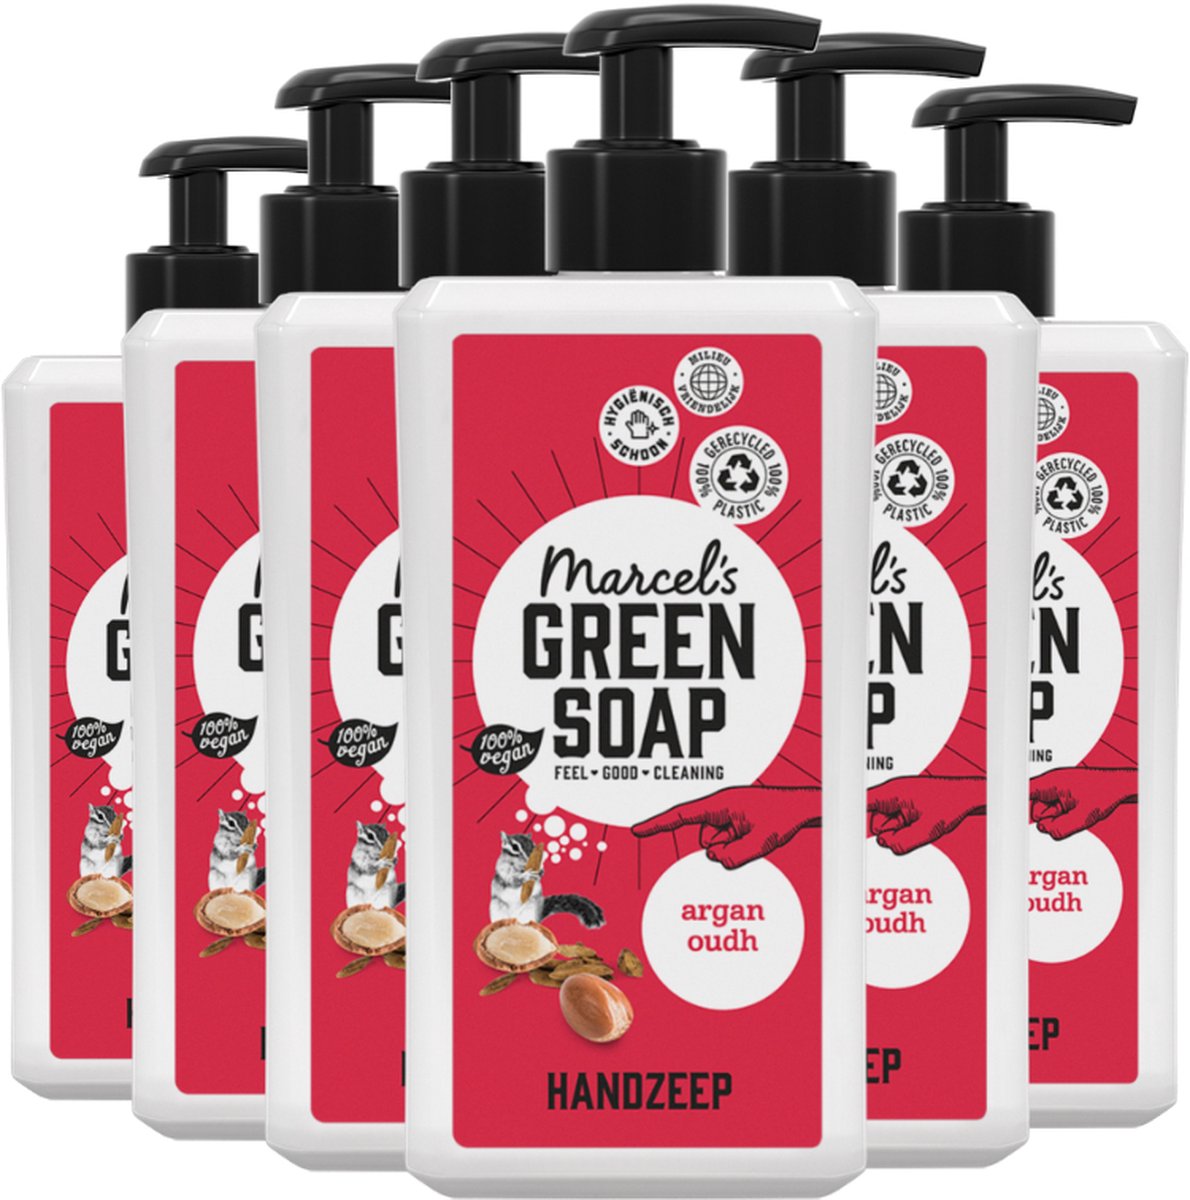 Marcel's Green Soap Handzeep Argan & Oudh - 6 x 500 ml